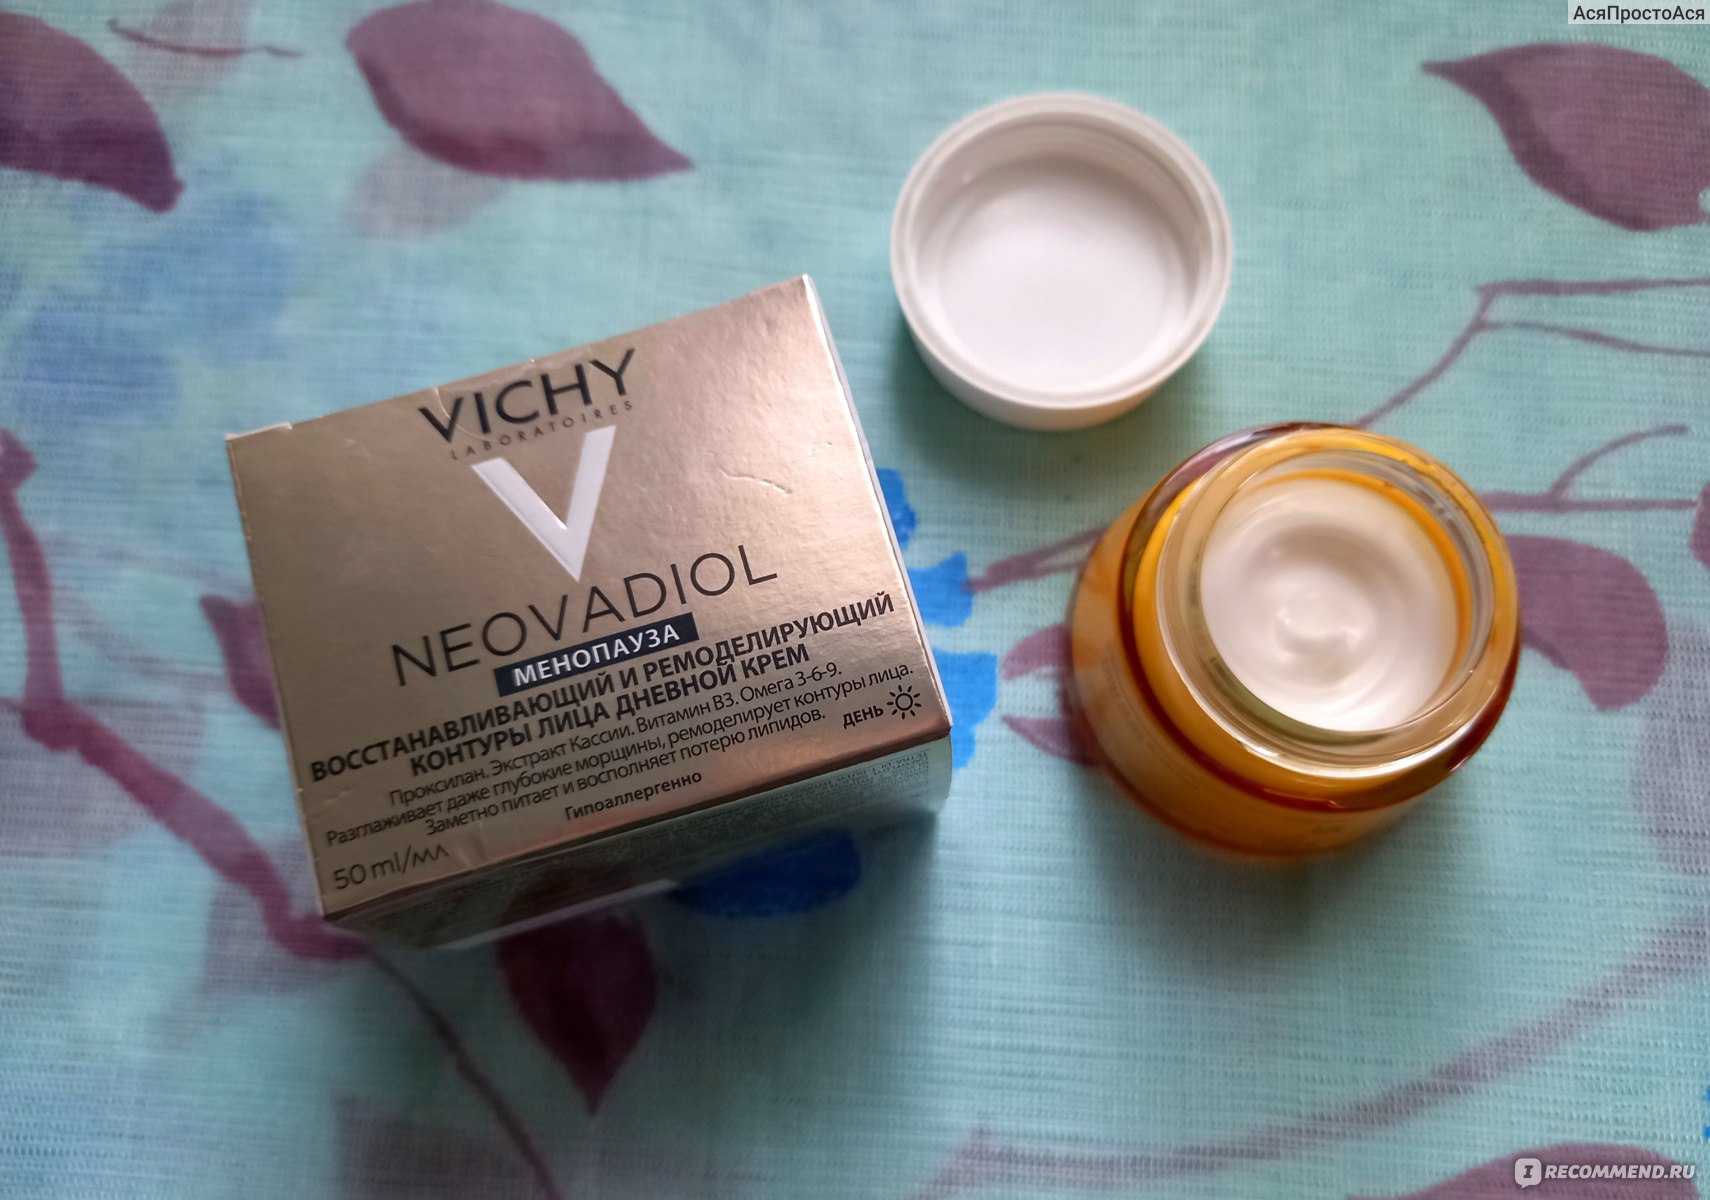 Vichy Neovadiol Post-Menopause дневной крем